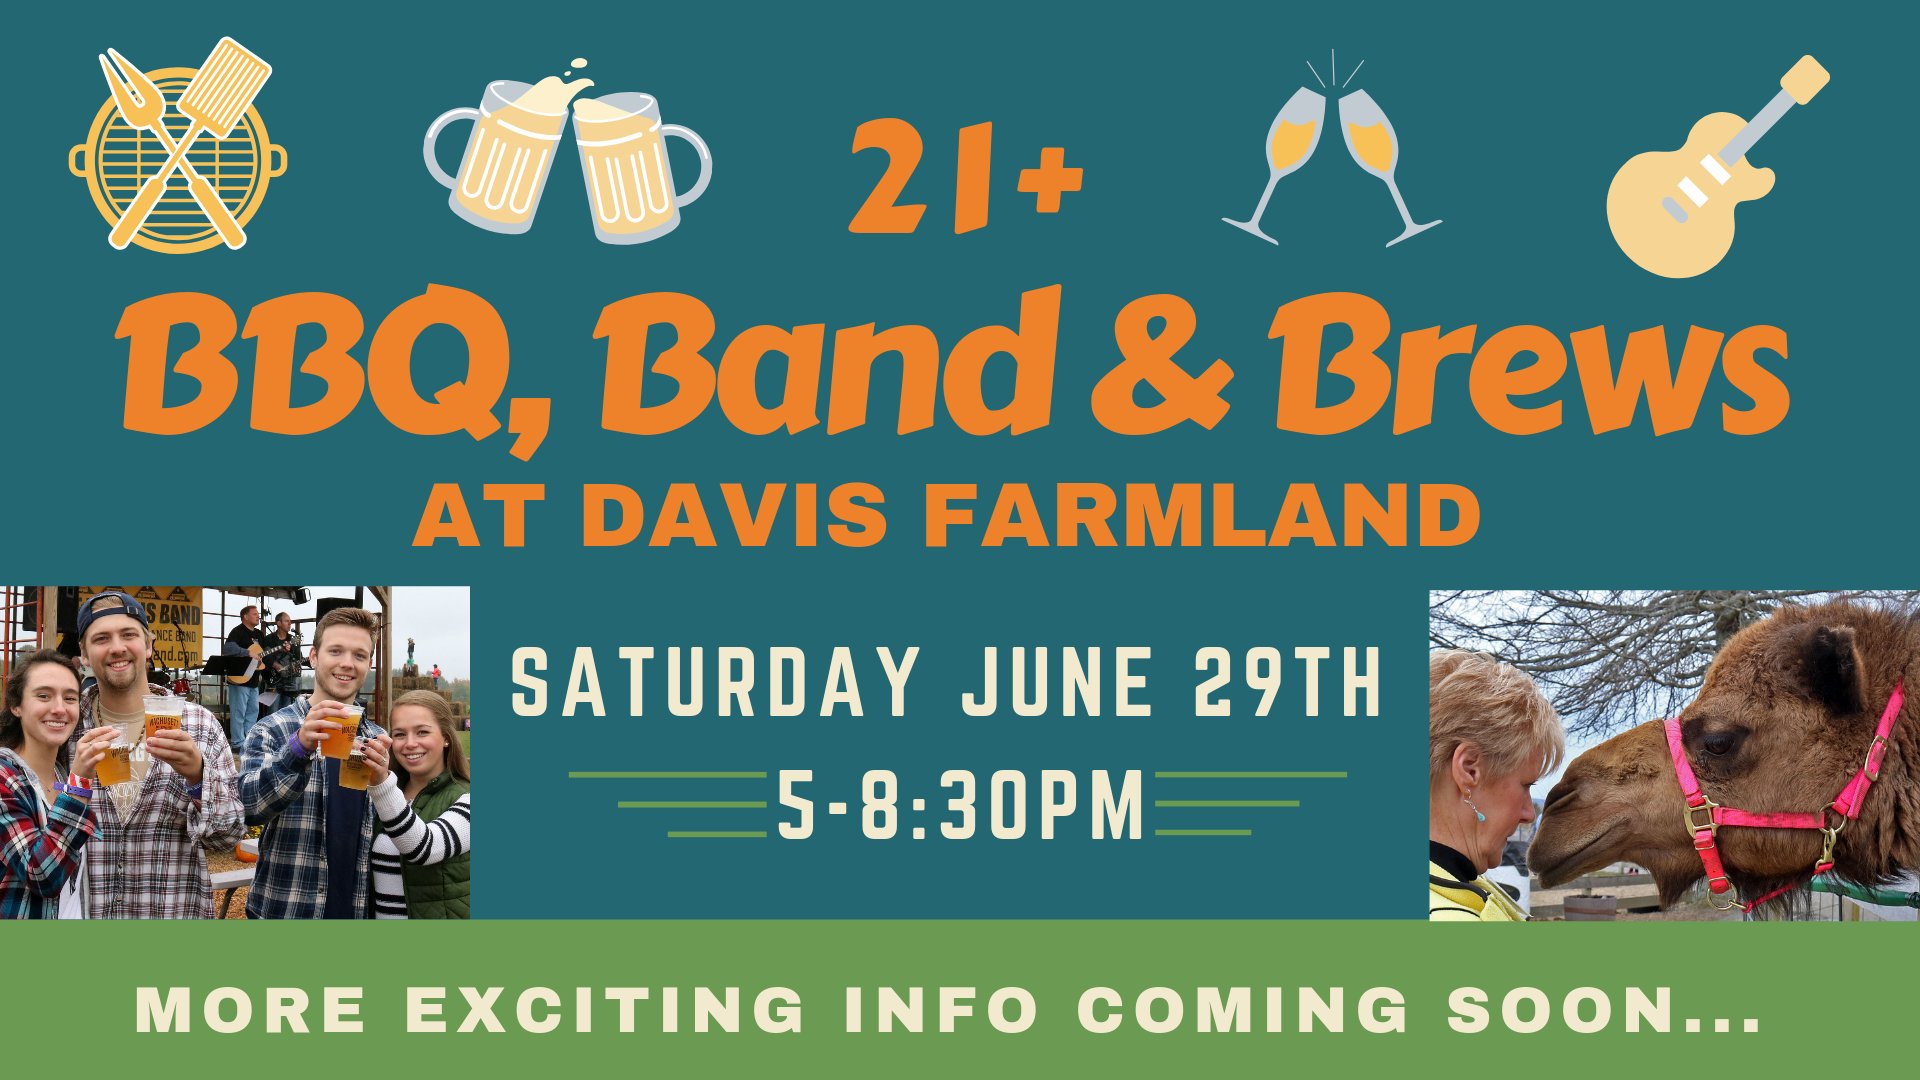 bbq, band &brews - Davis Farmland